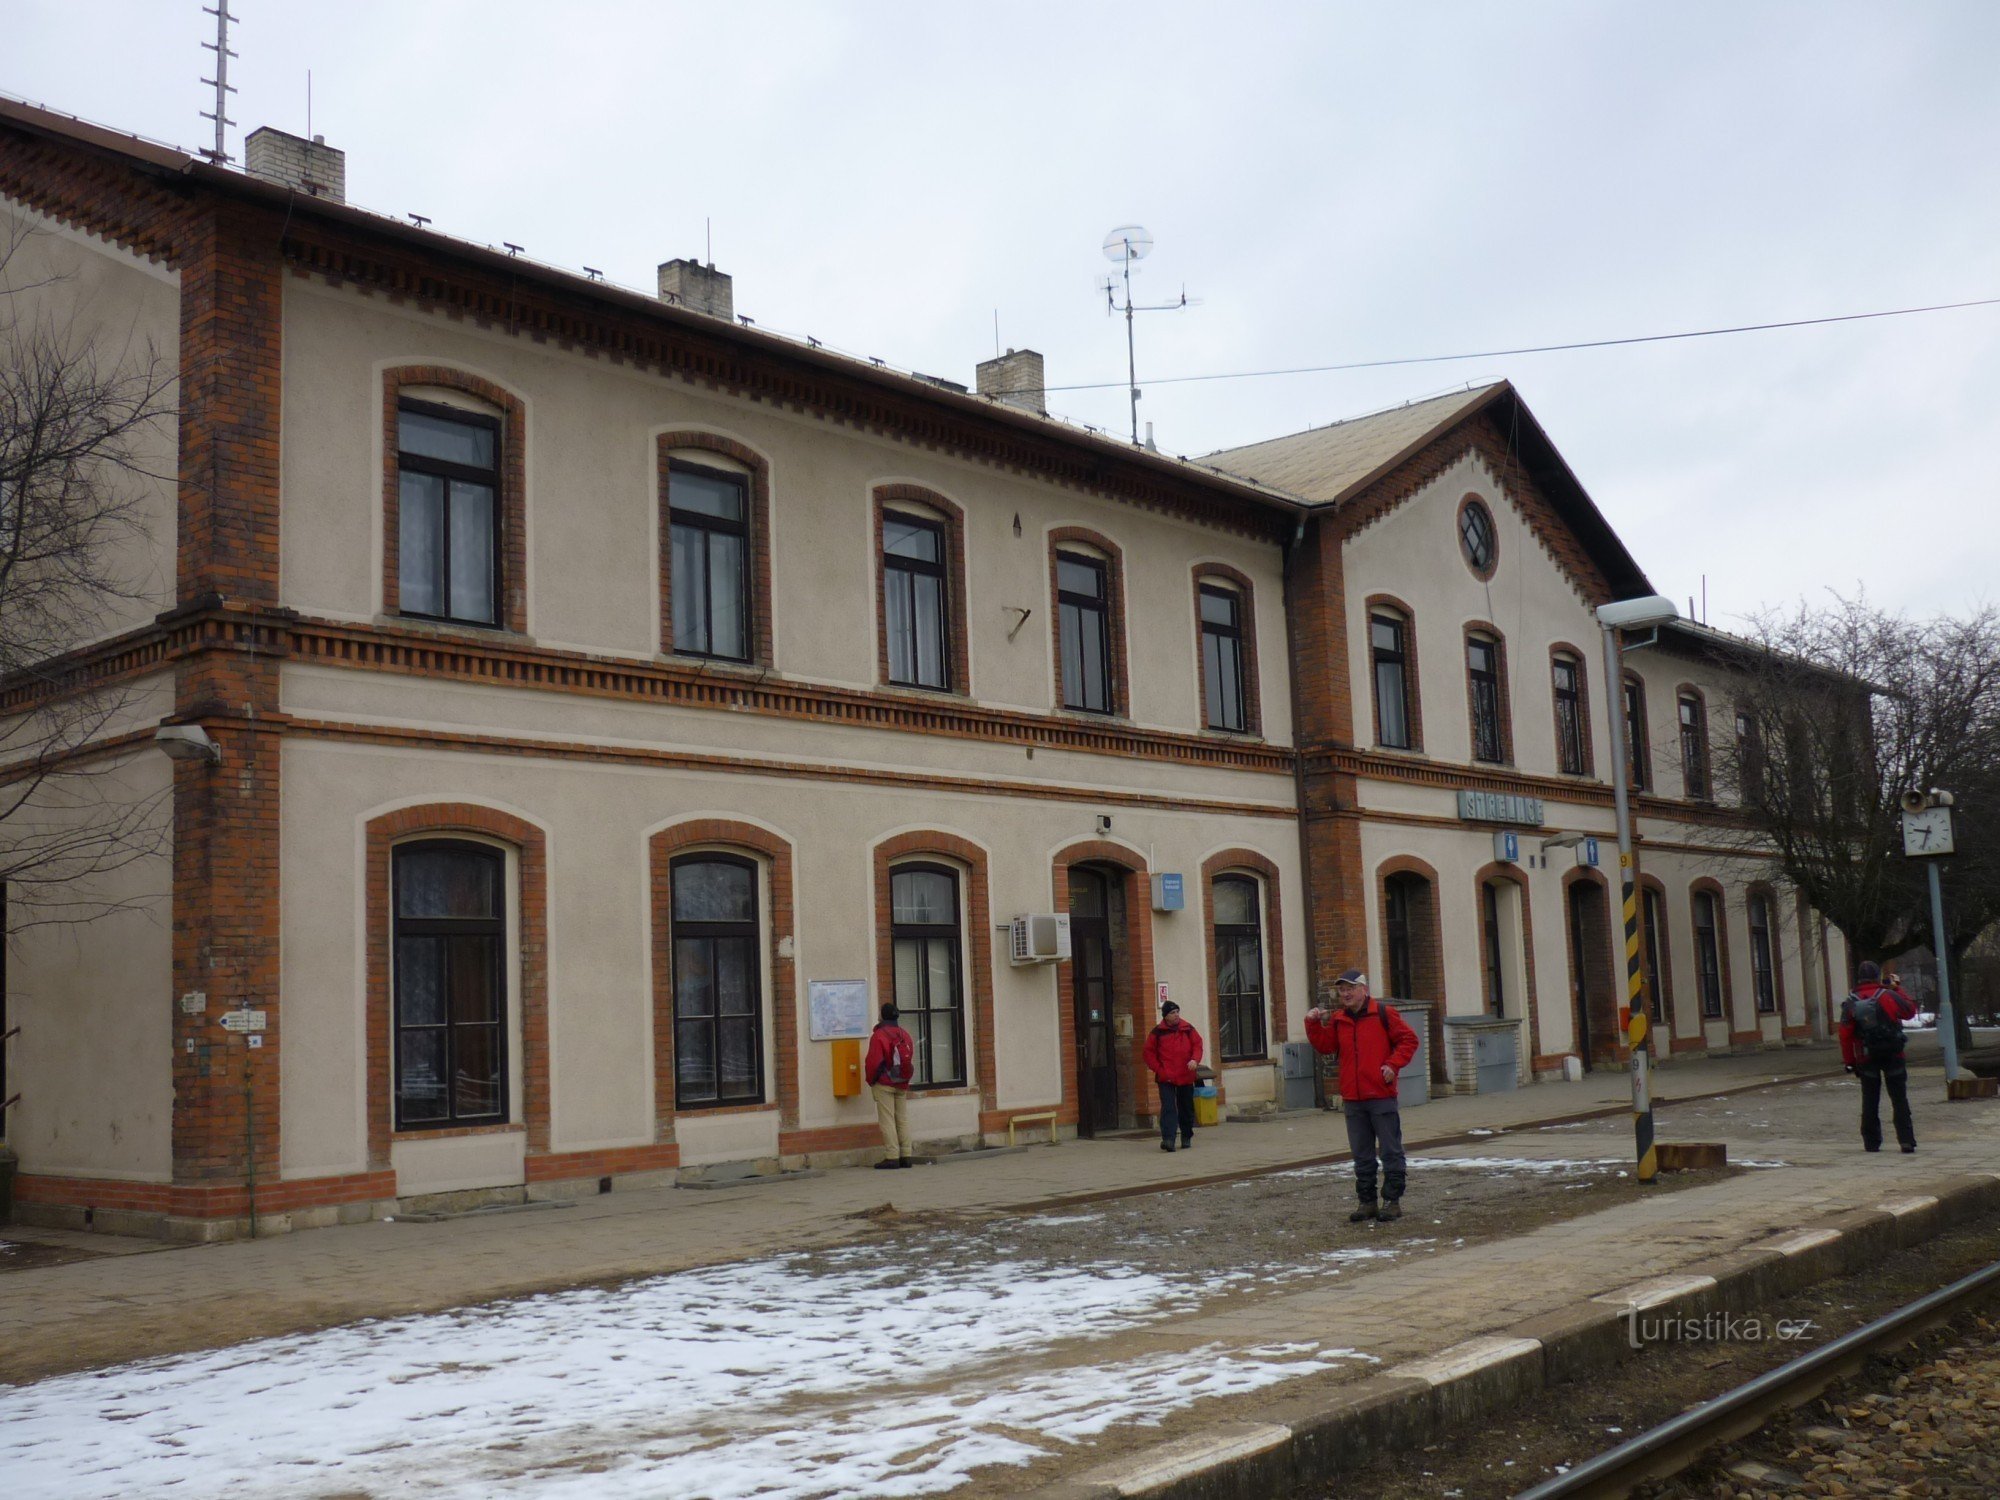 Station Střelice